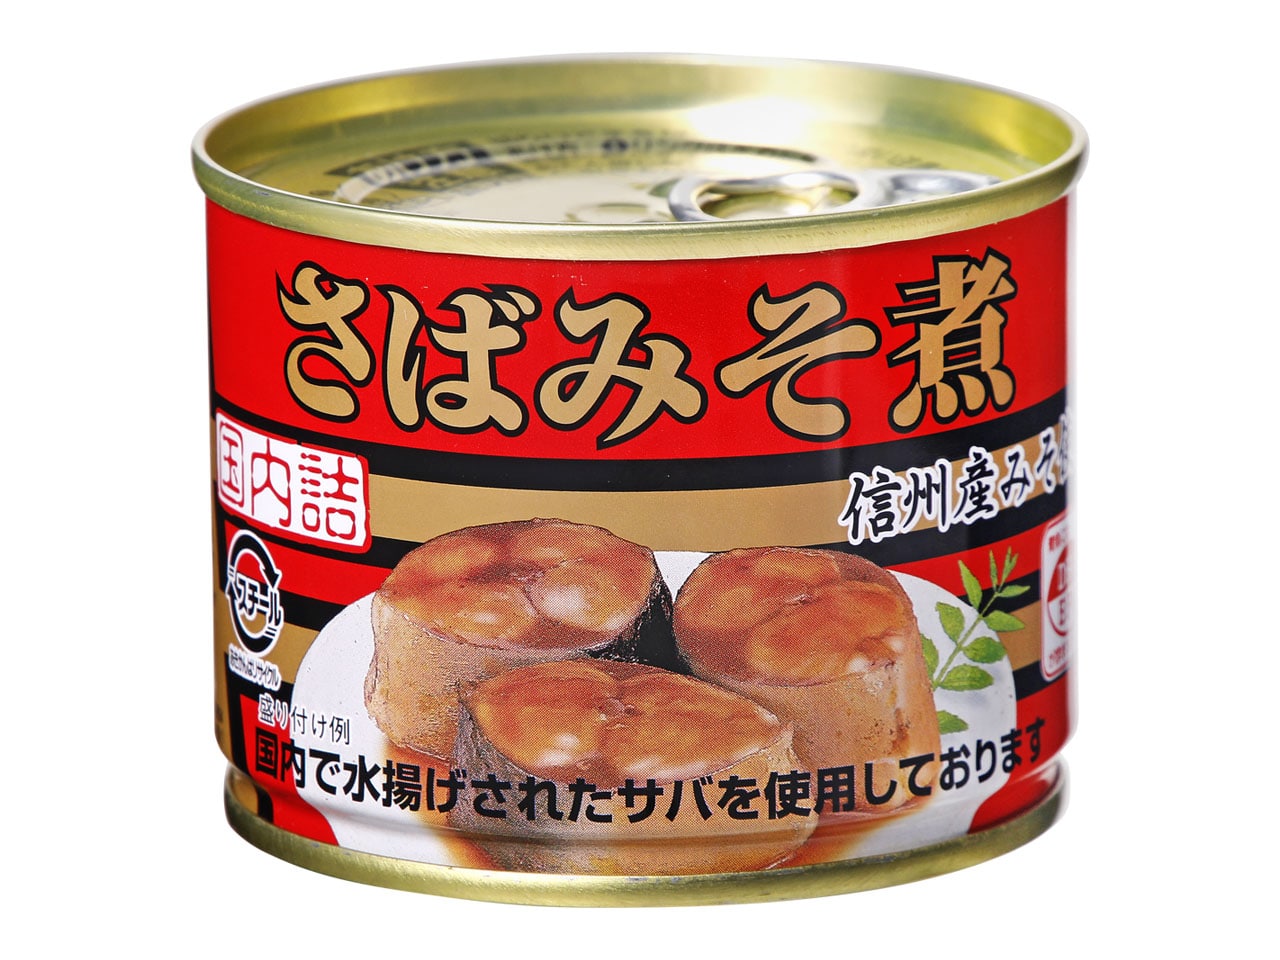 さば味噌煮 EO6 【6缶セット】